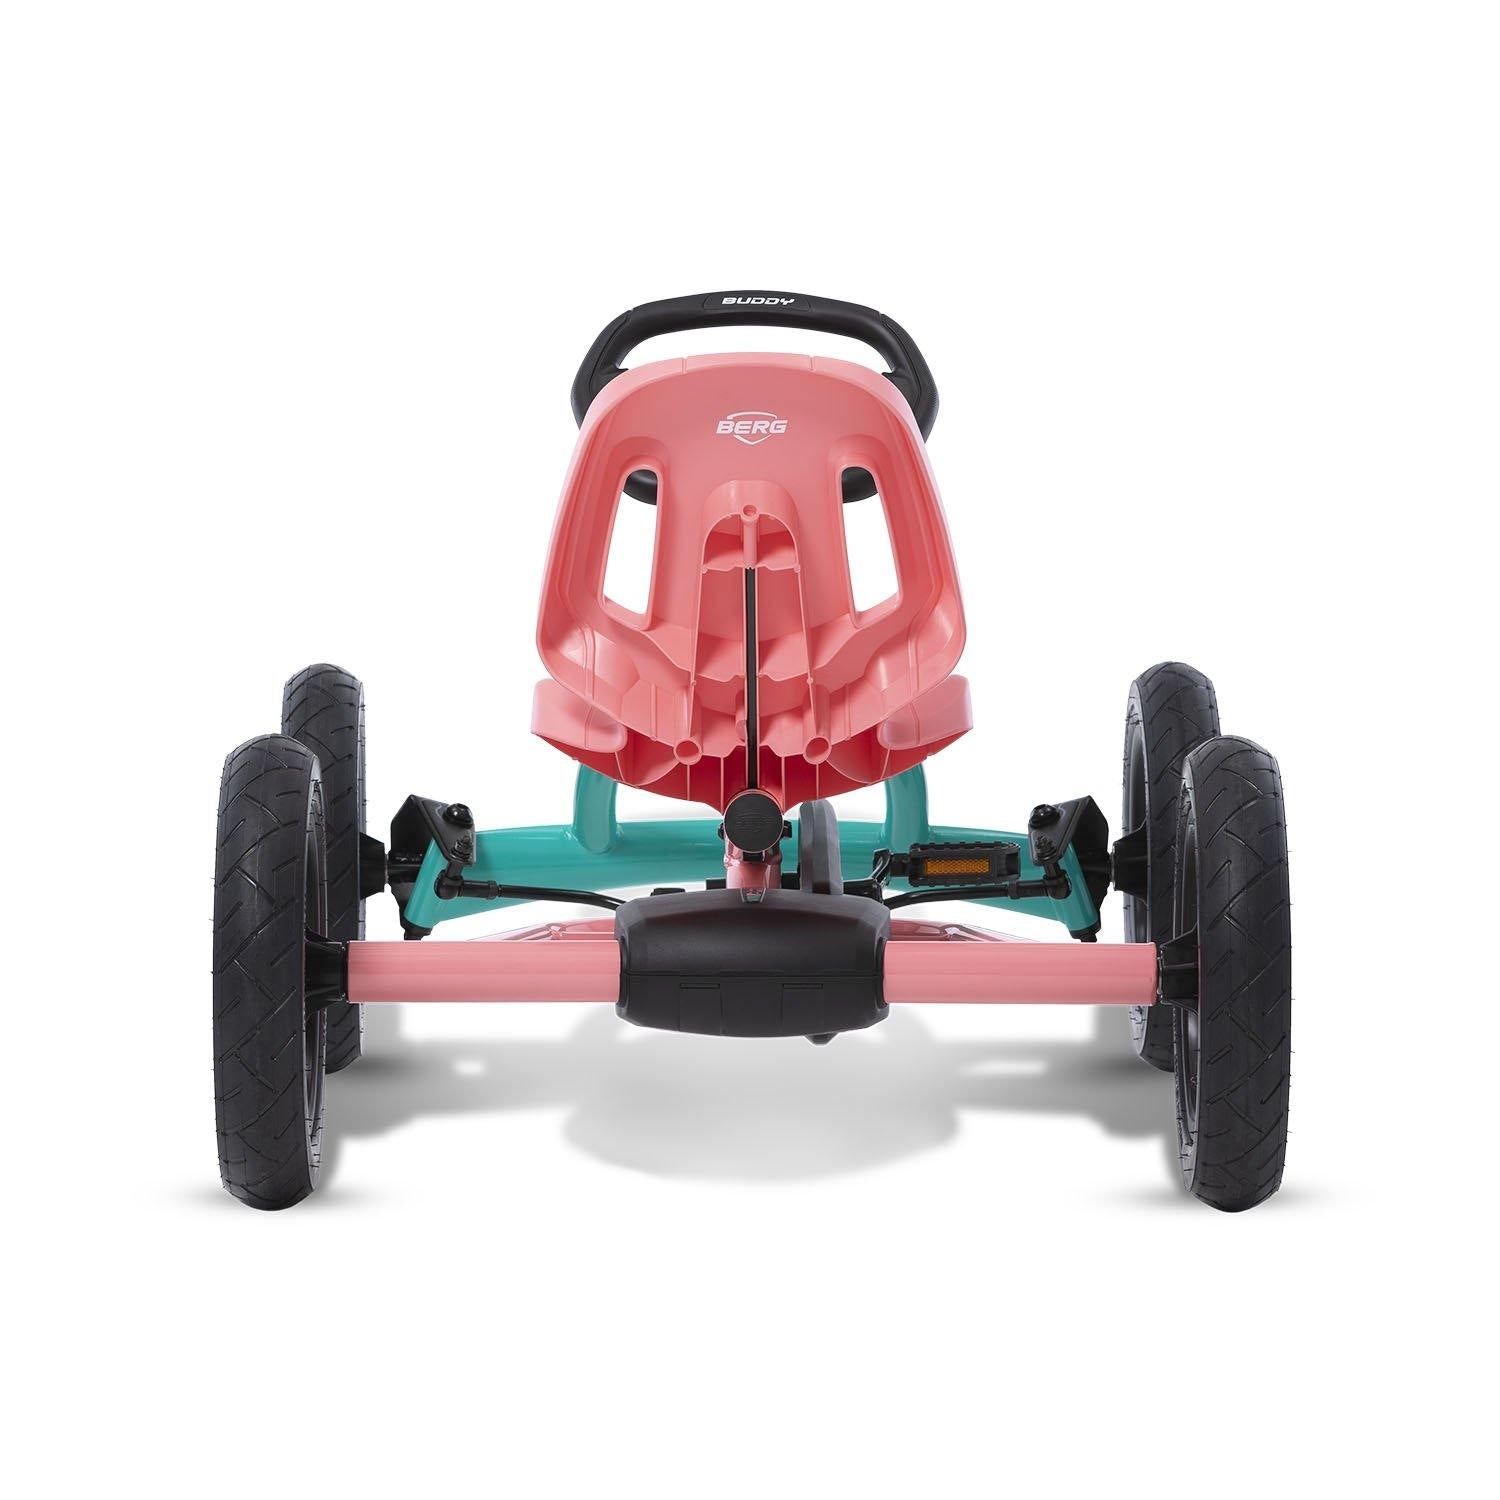 Berg Toys - Buddy Lua Pedal Go Kart - Go Kart - Go Cart for Kids - Pedal  Car  8715839068207